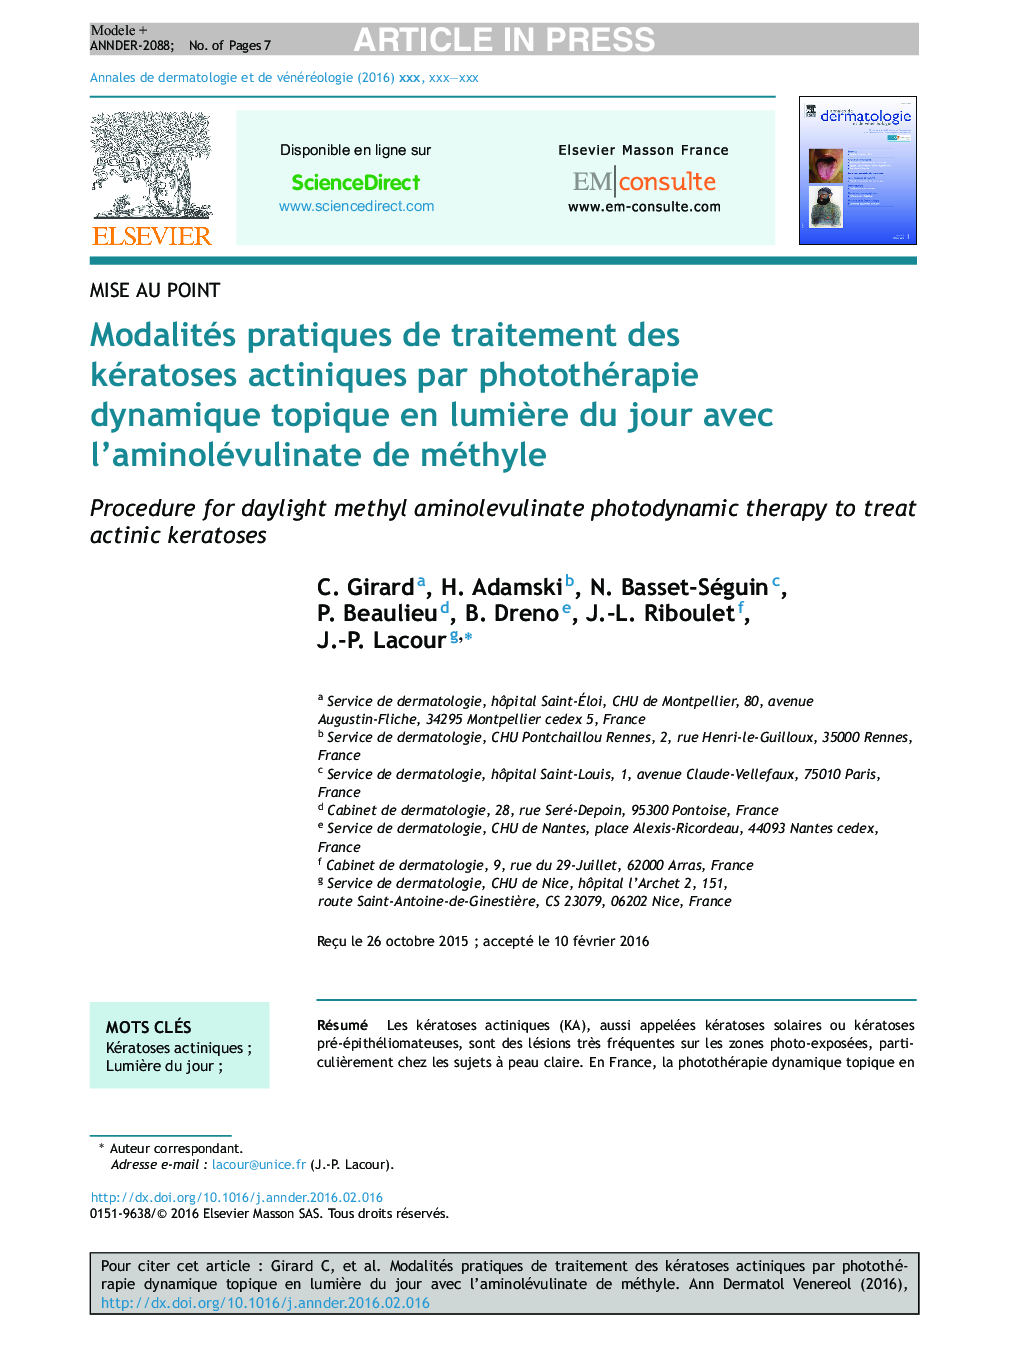 Modalités pratiques de traitement des kératoses actiniques par photothérapie dynamique topique en lumiÃ¨re du jour avec l'aminolévulinate de méthyle